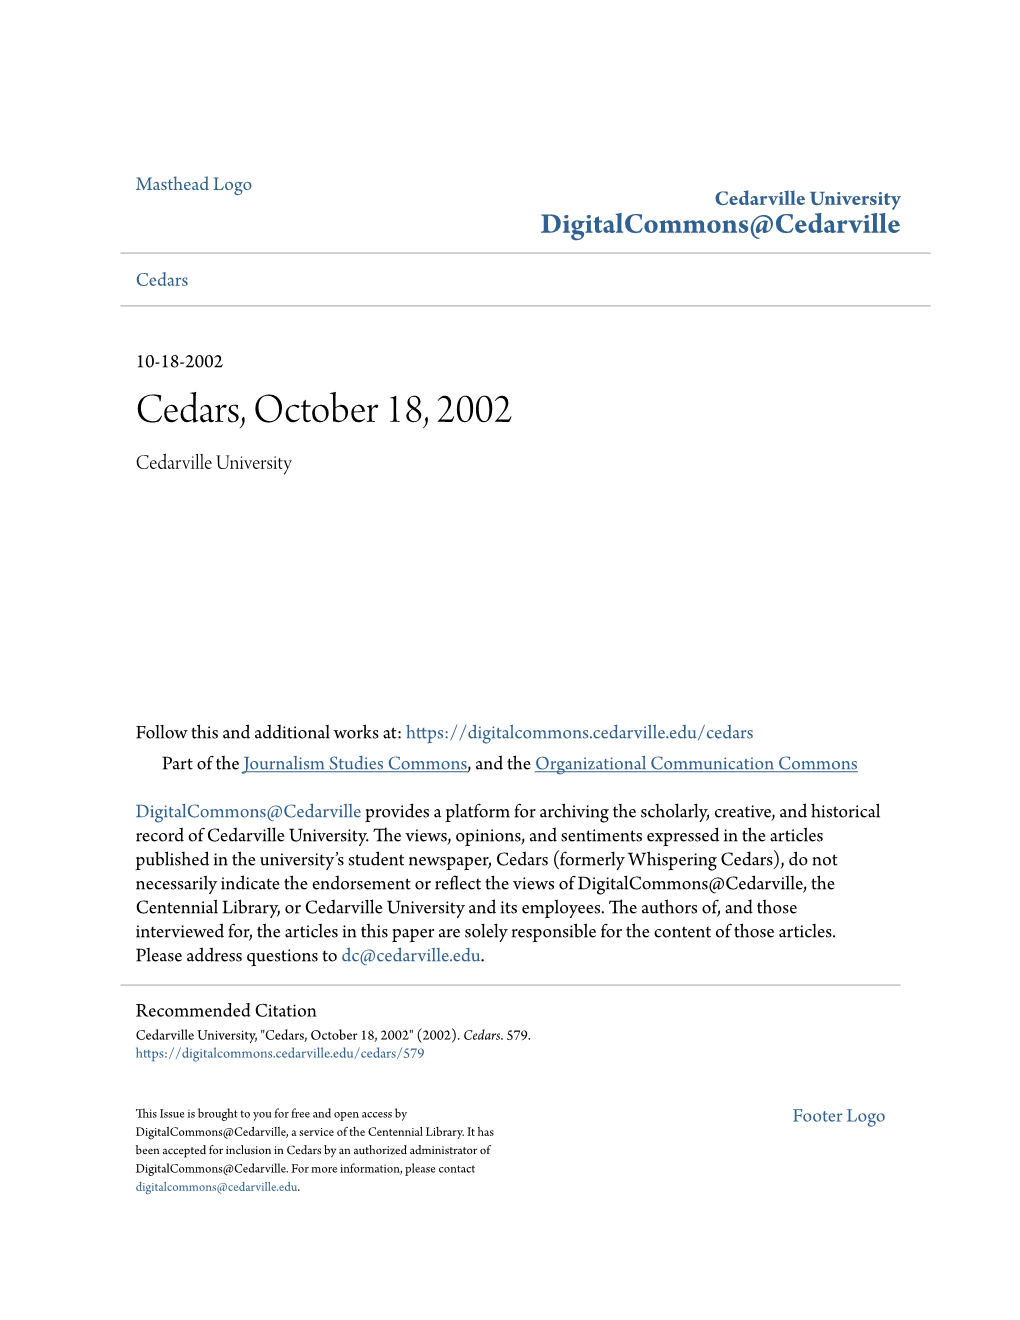 Cedars, October 18, 2002 Cedarville University